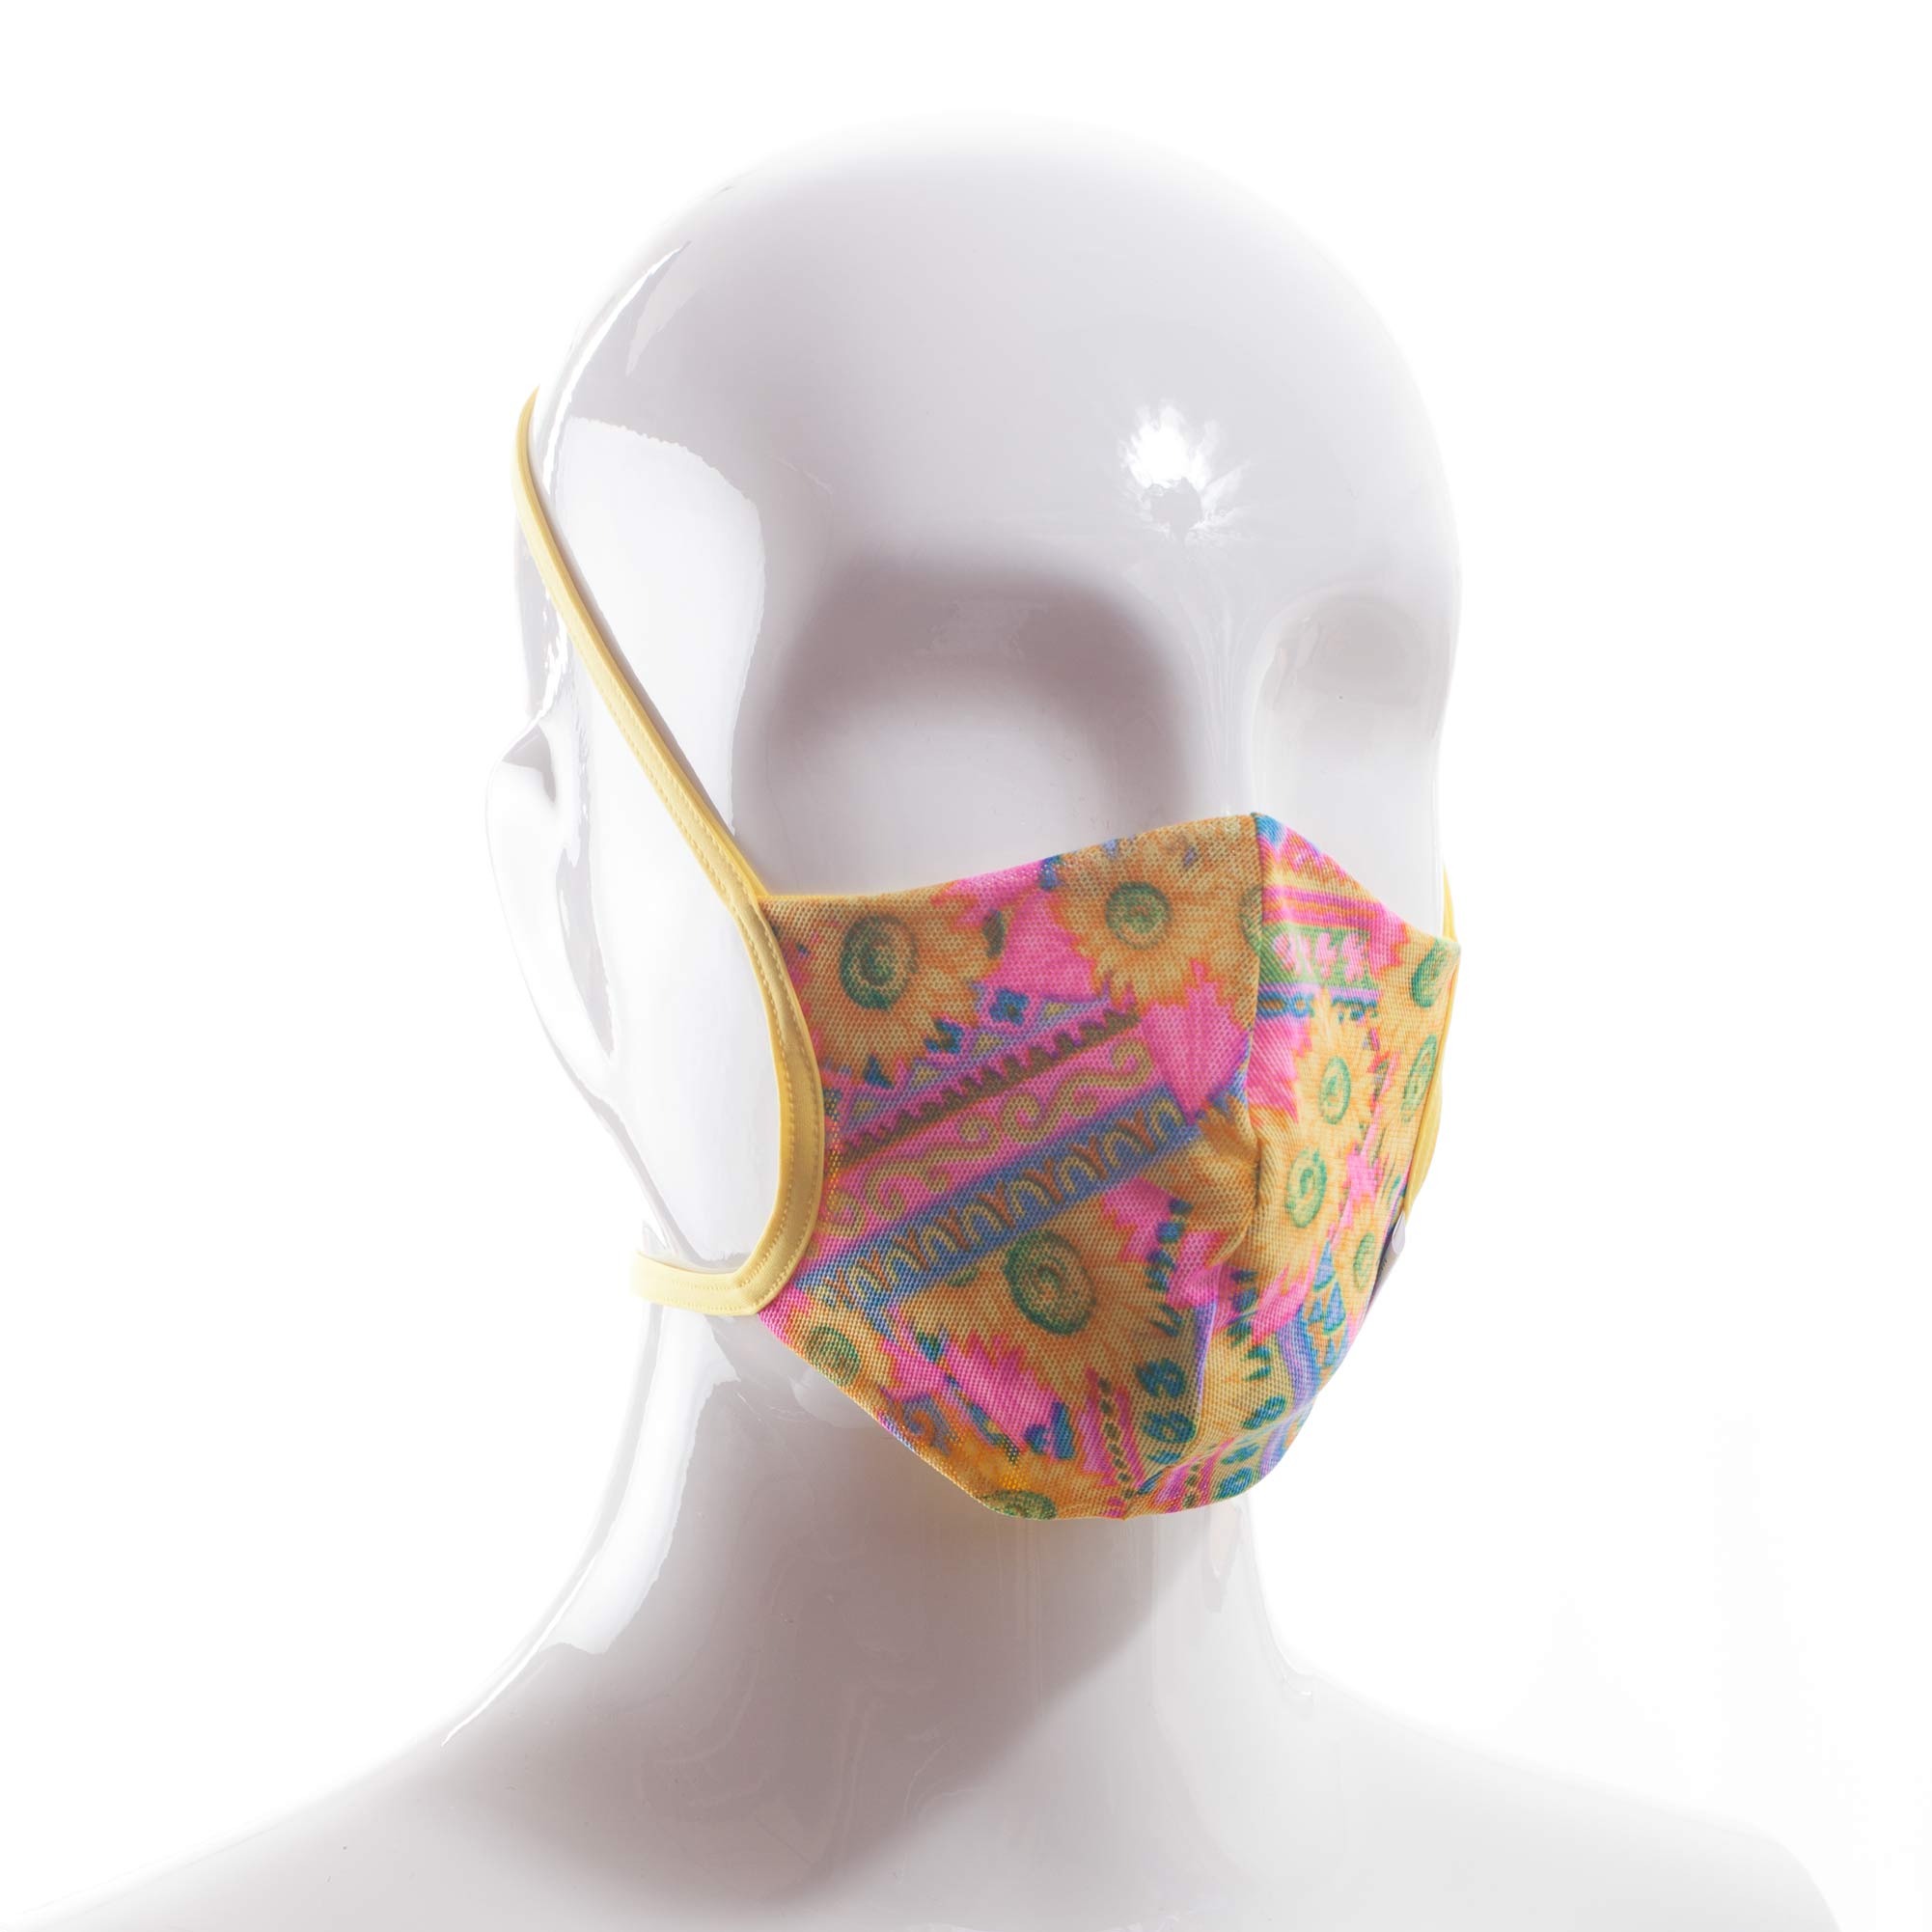 Die Baumwoll-Polyester Mund-Nasen Maske BWPM4Sonnenblume von der Wonneberger Manufaktur ist eine textile Behelfsmaske, kein zertifizierter Mundschutz.

Sie schützt nur bedingt vor Ansteckung. Ihr eigentlicher Zweck ist es, den Atem des Trägers zu filtern und dadurch seine Umgebung zu schützen.

Daher muss die…